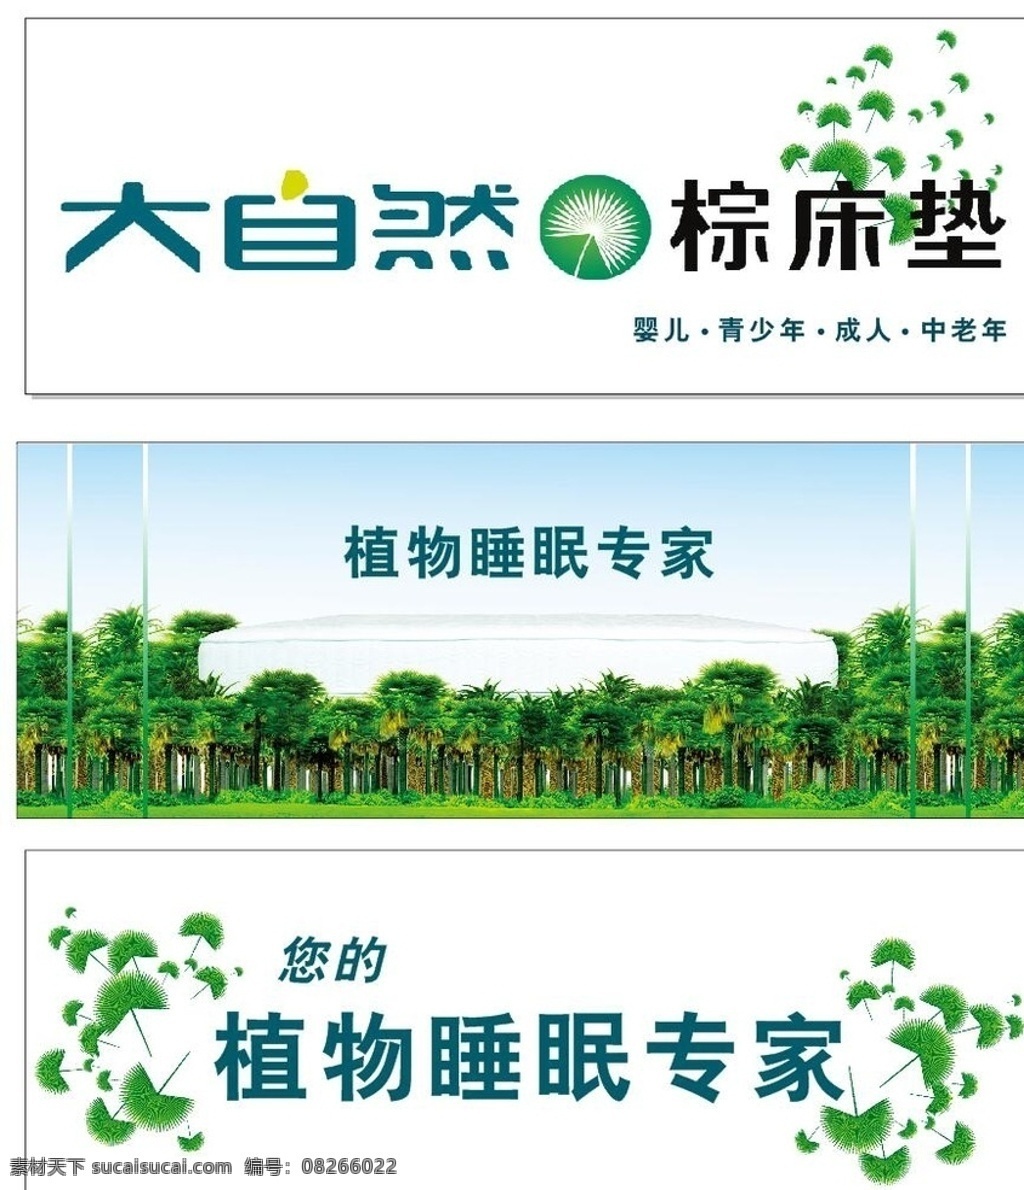 大自然床垫 大自然 床垫 海报 单页 灯箱广告 深绿色 植物 棕树林 logo 产品效果